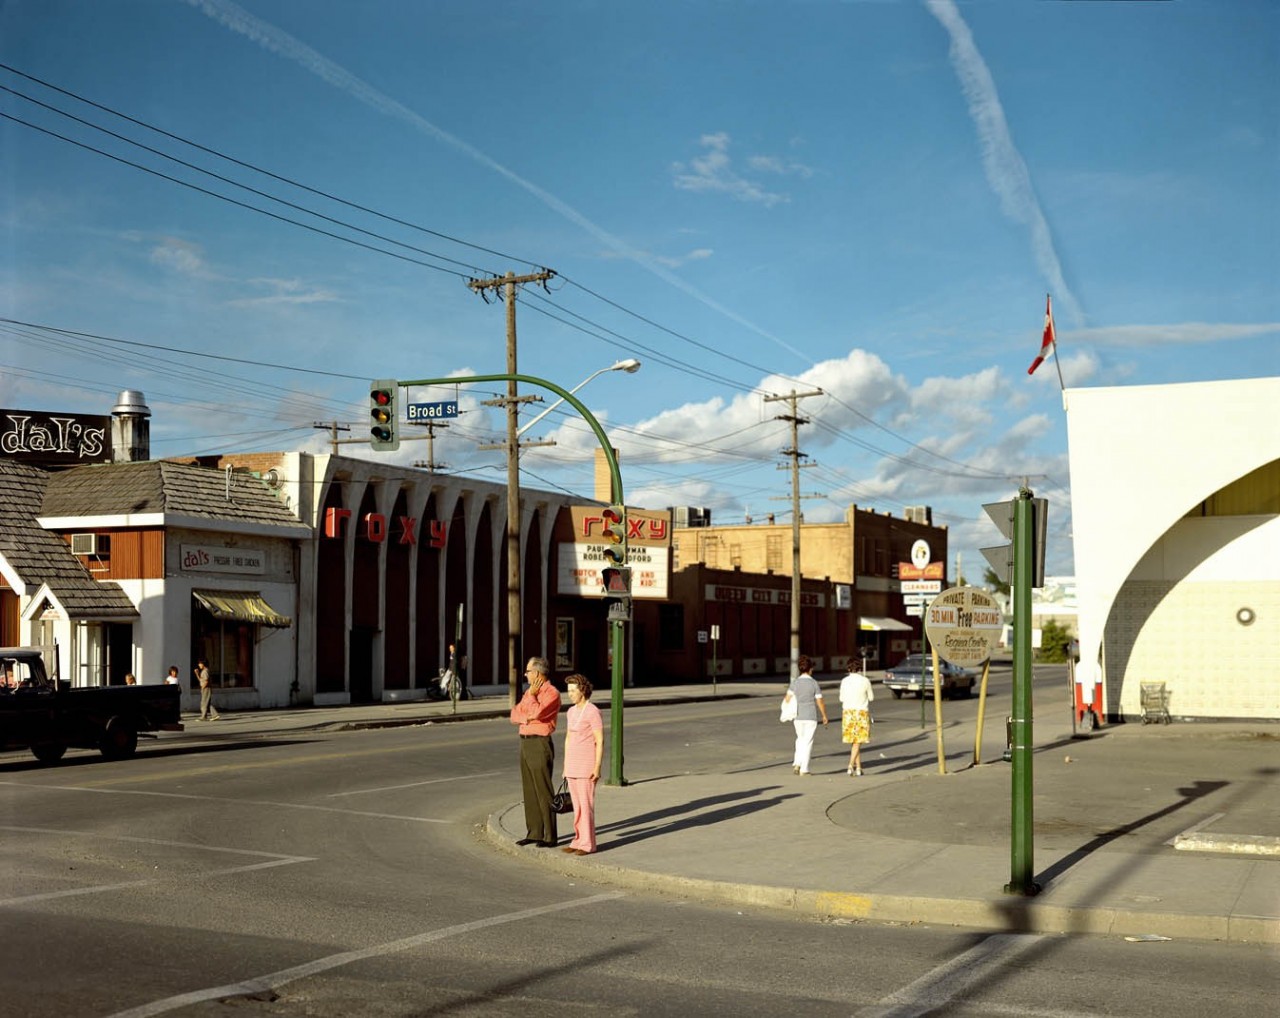 Америка в 1970-е на снимках Стивена Шора